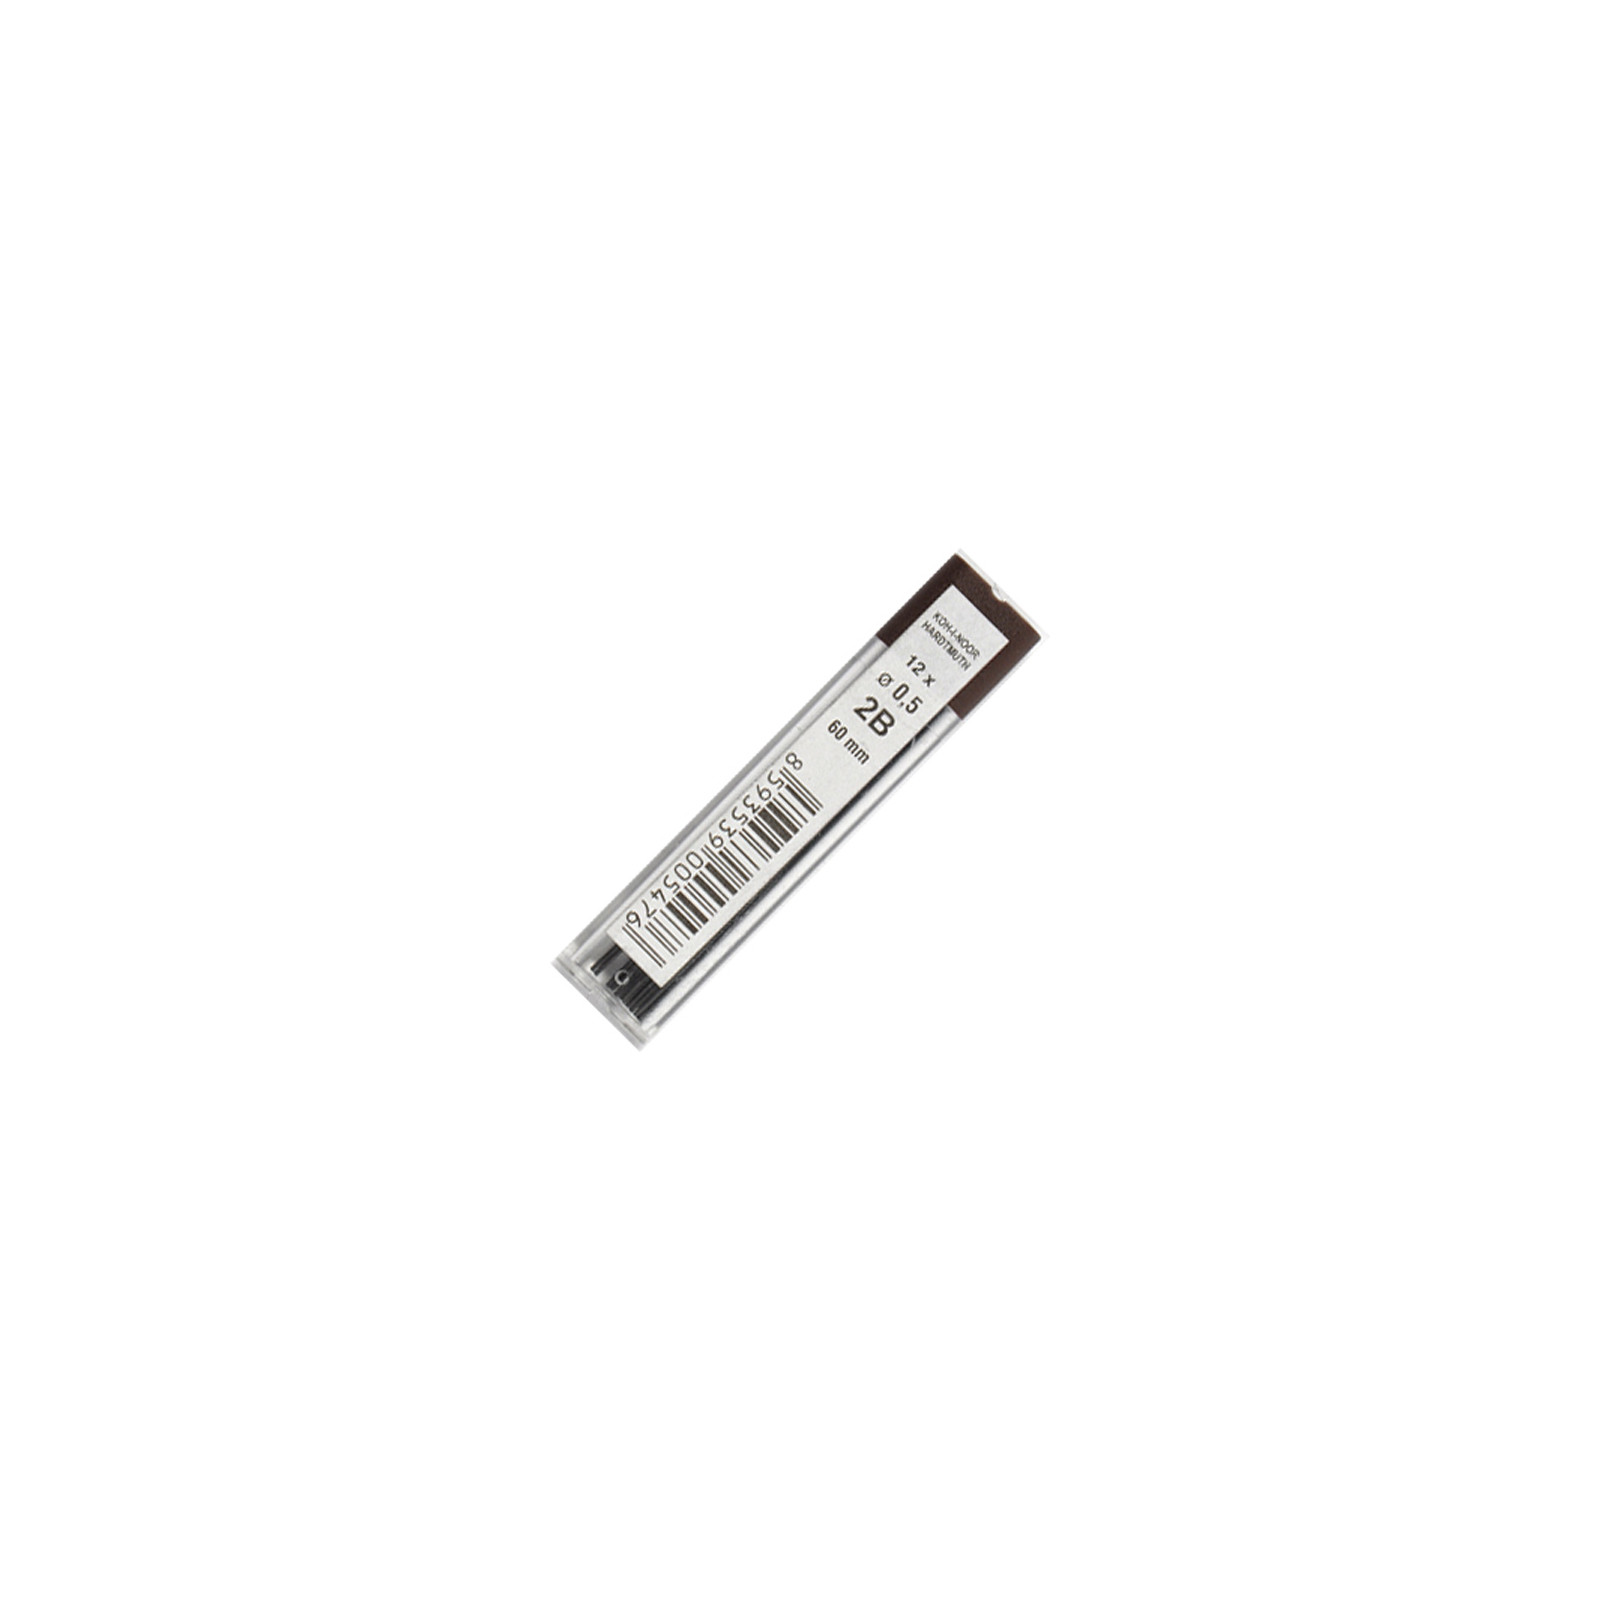 Грифель для механического карандаша Koh-i-Noor 4152.2B 0.5 мм, 12шт (415202B005PK)